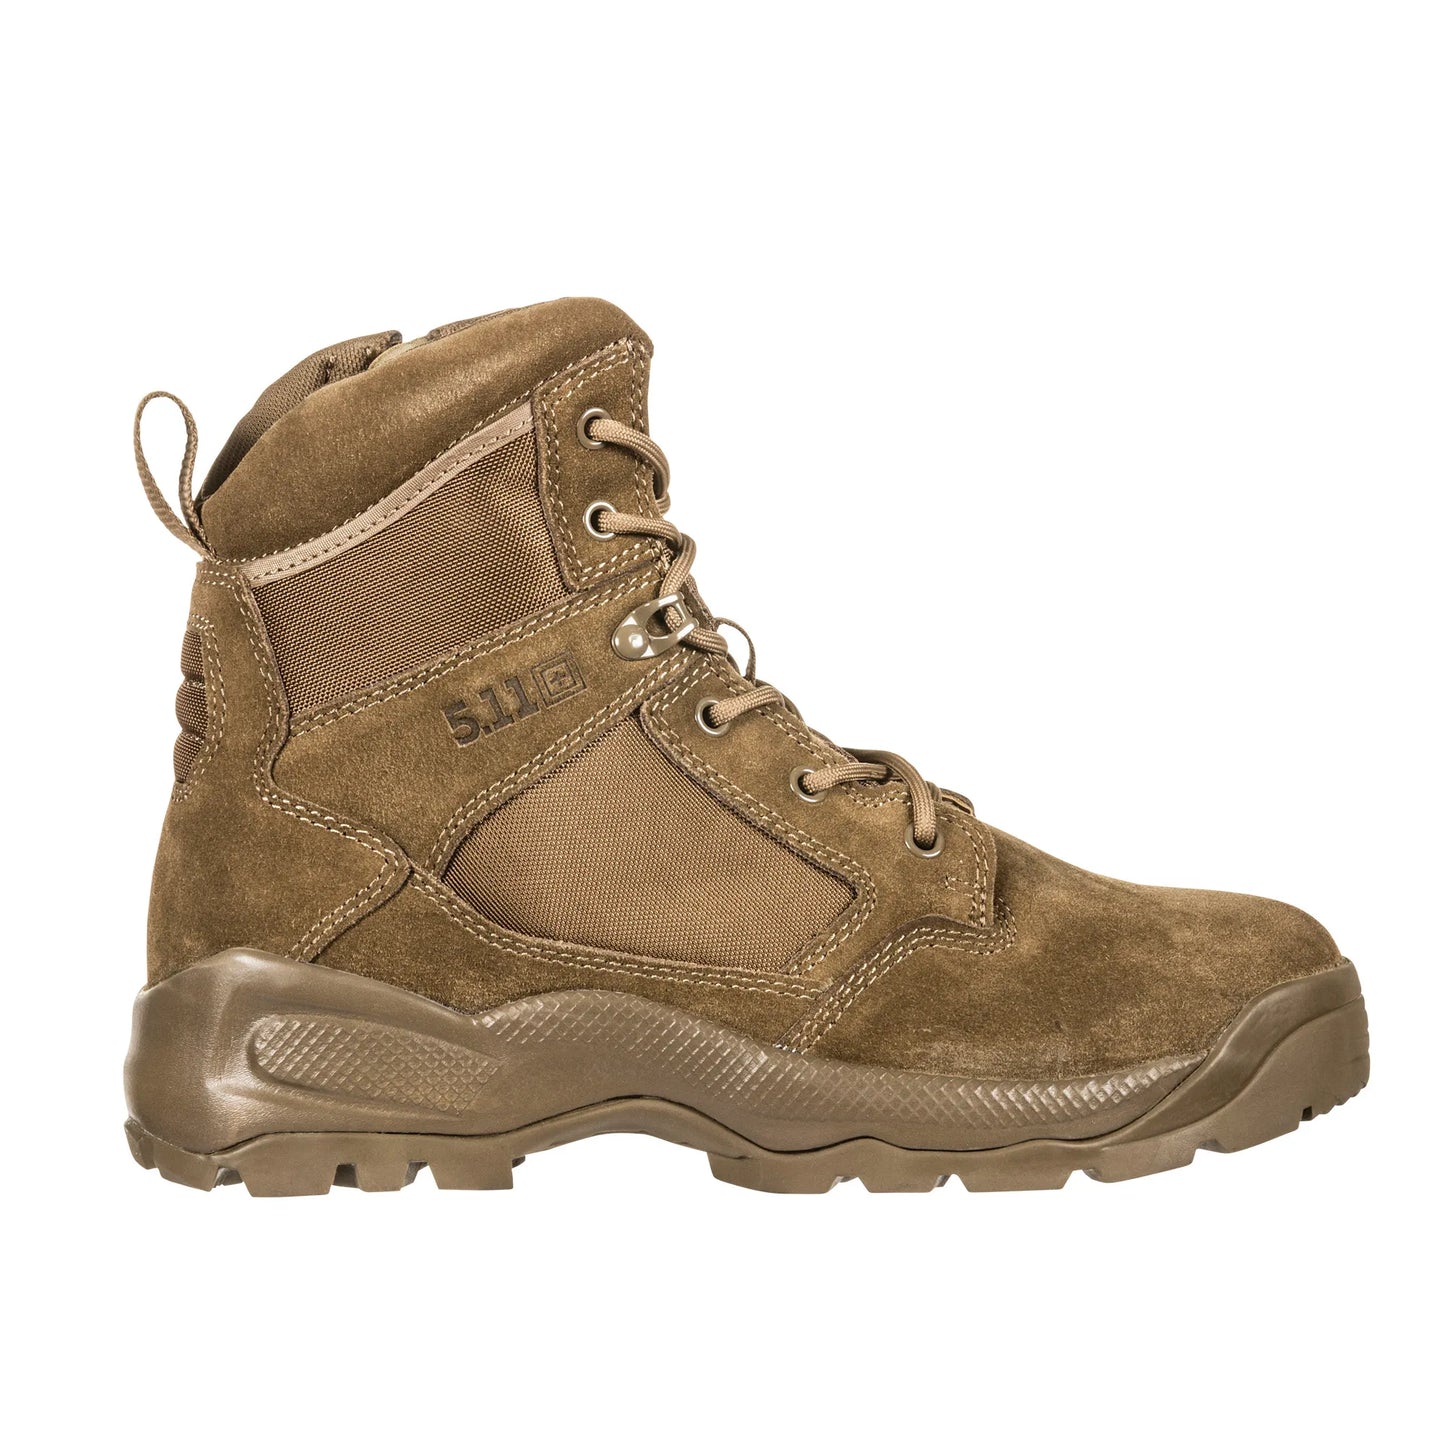 5.11 Tactical A.T.A.C.® 2.0 6" Side Zip Desert Boots